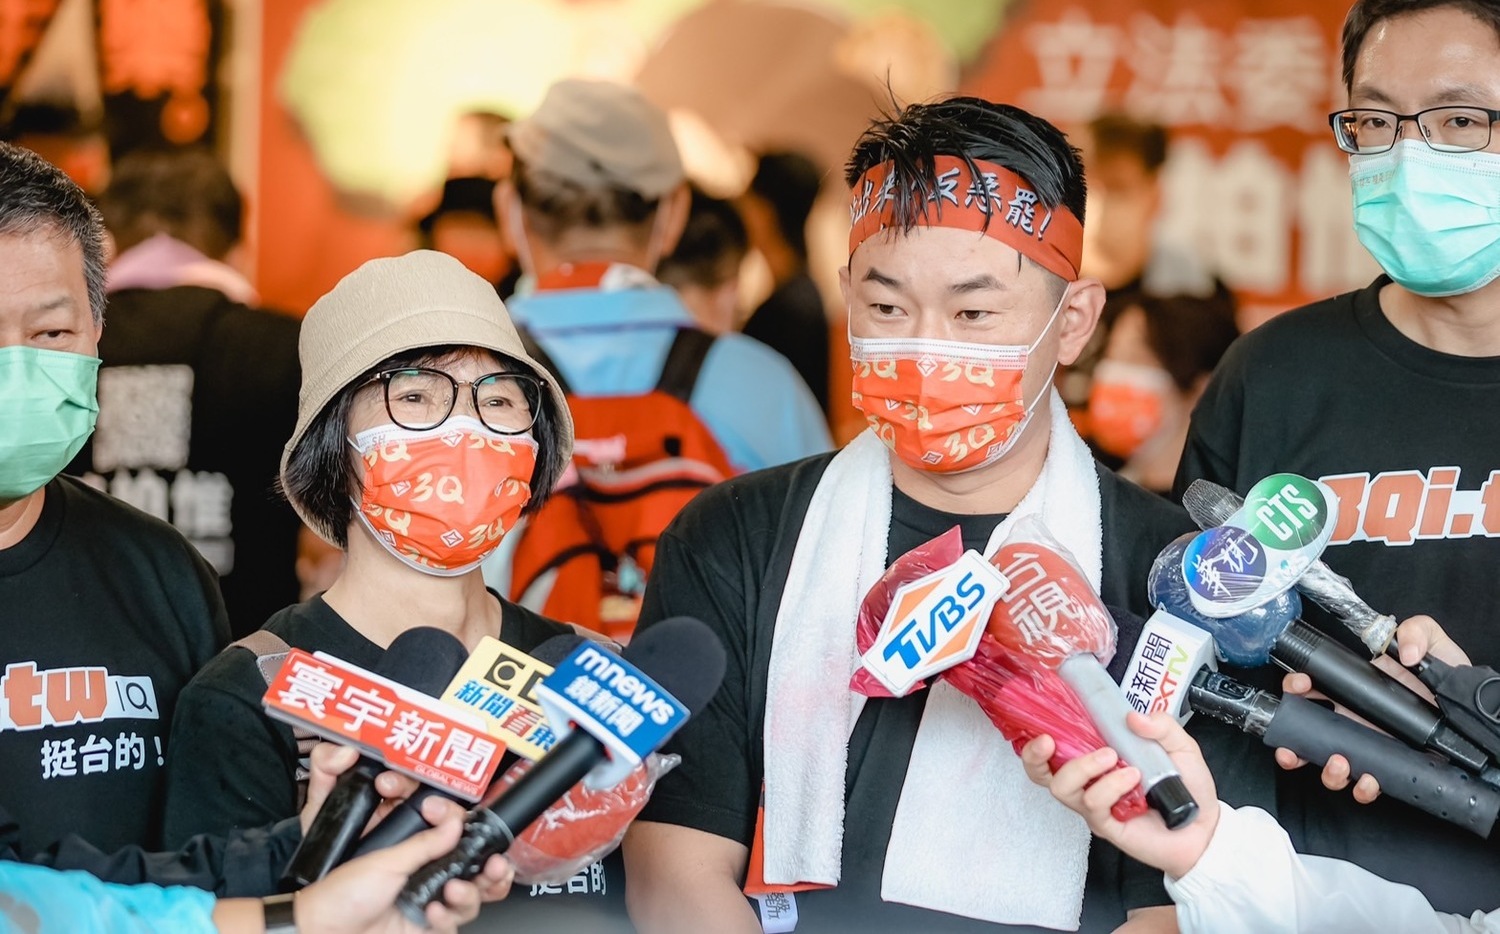 內幕》投票前夕向支持者祭動員令 台灣基進決策關鍵曝光 | 政治 | Ne